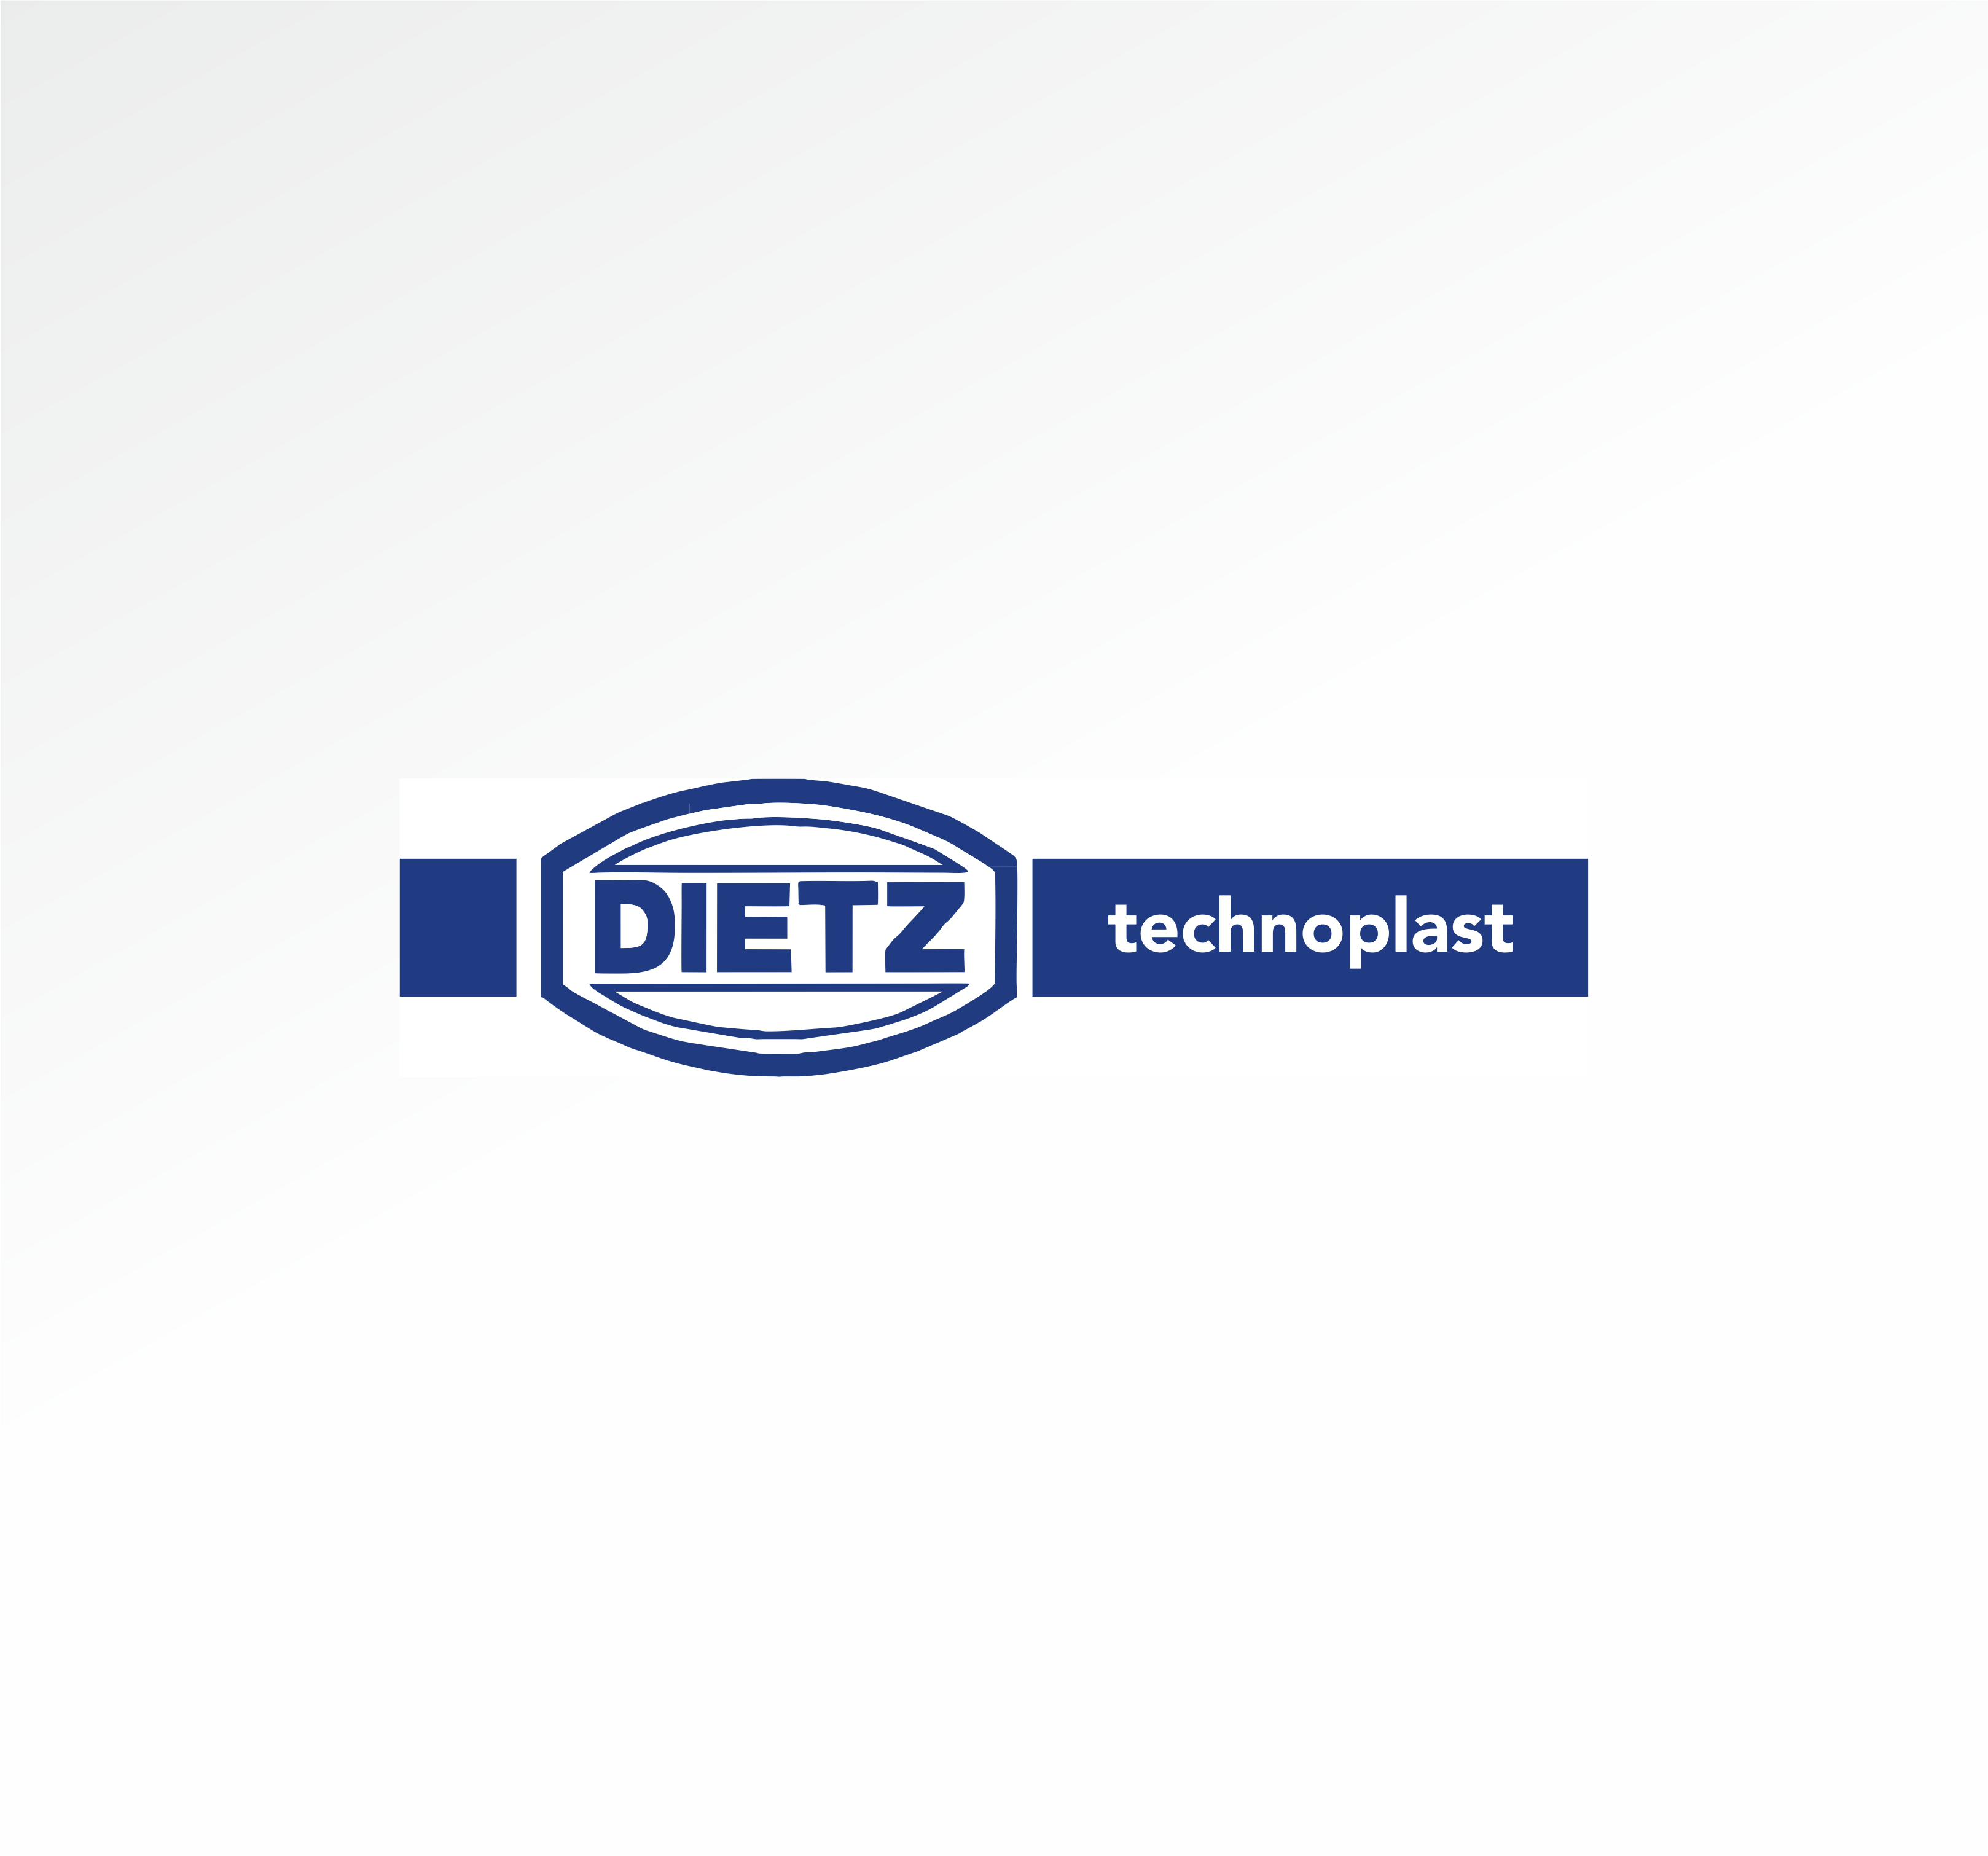 dietz-platzhalter